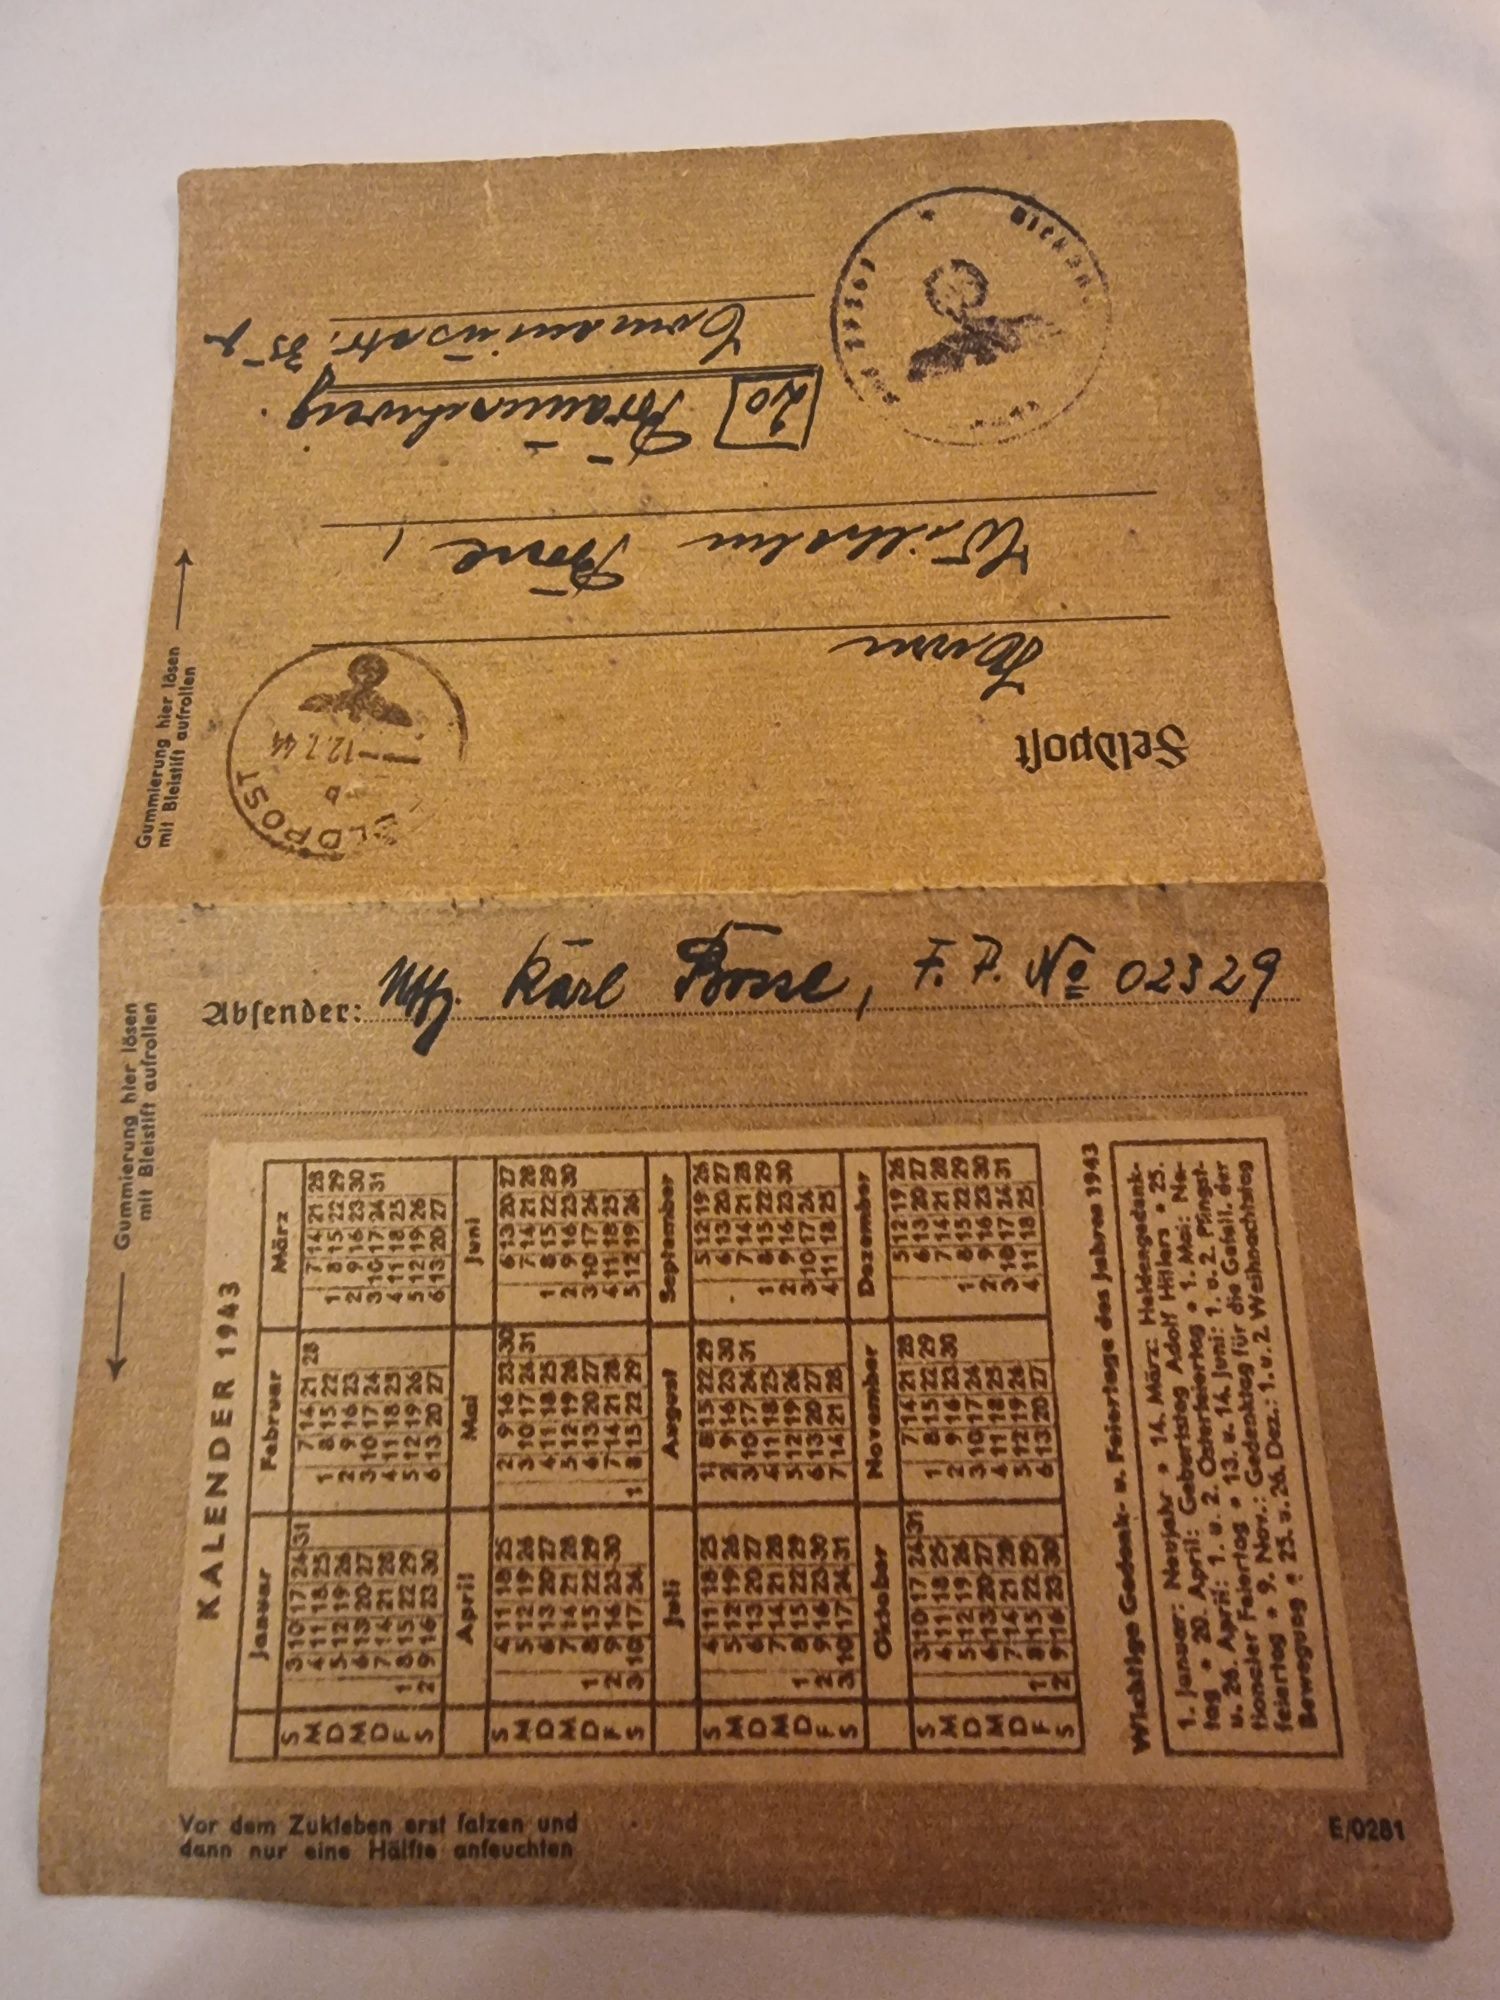 Feldpost z kalendarzem na 1943 rok, 3 Rzesza